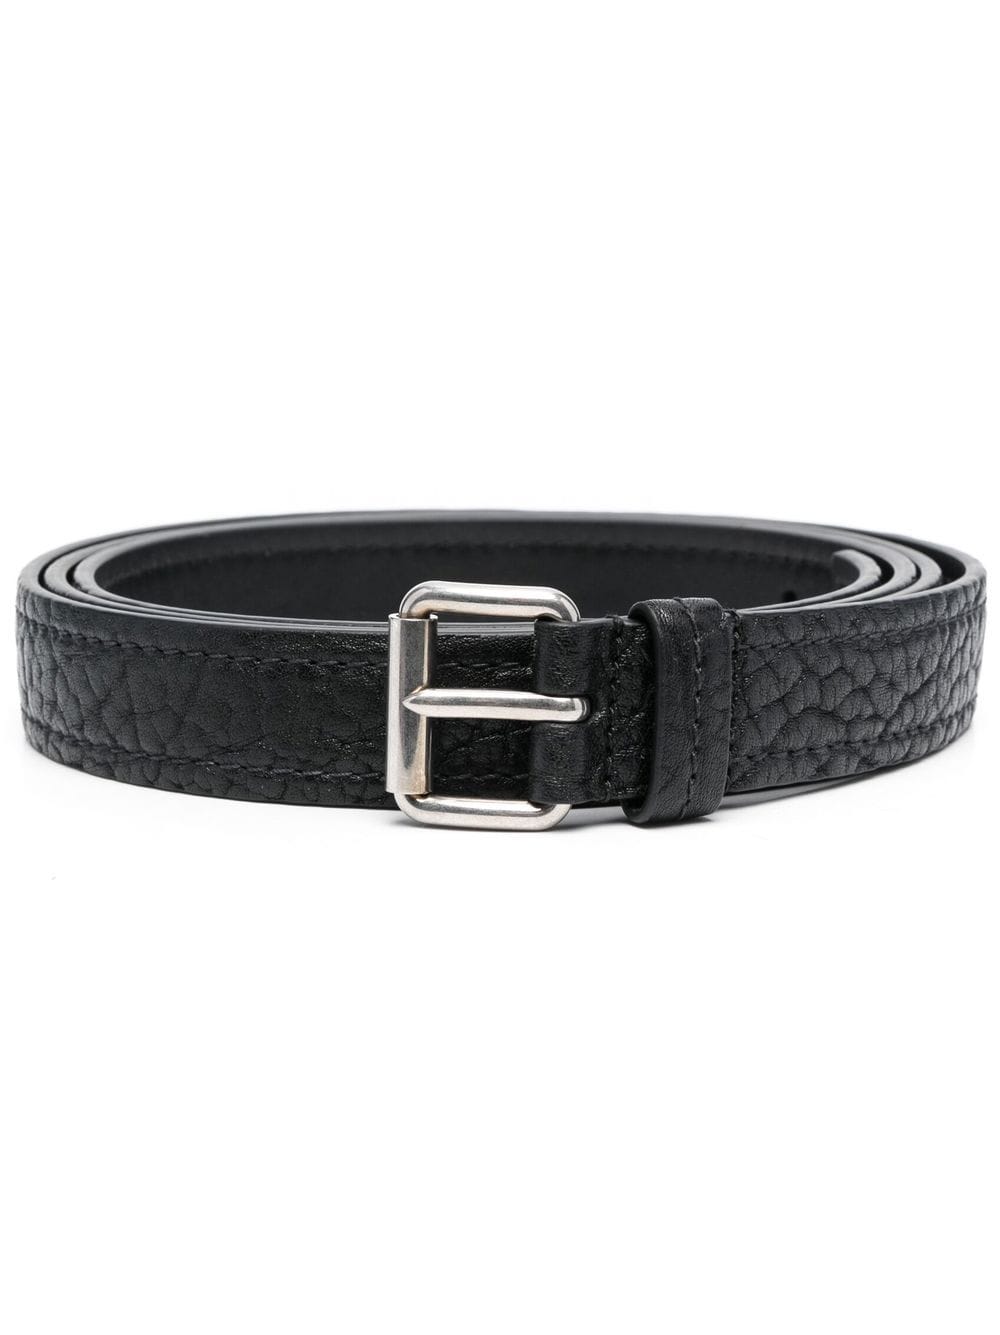 Prada textured leather belt - Black von Prada